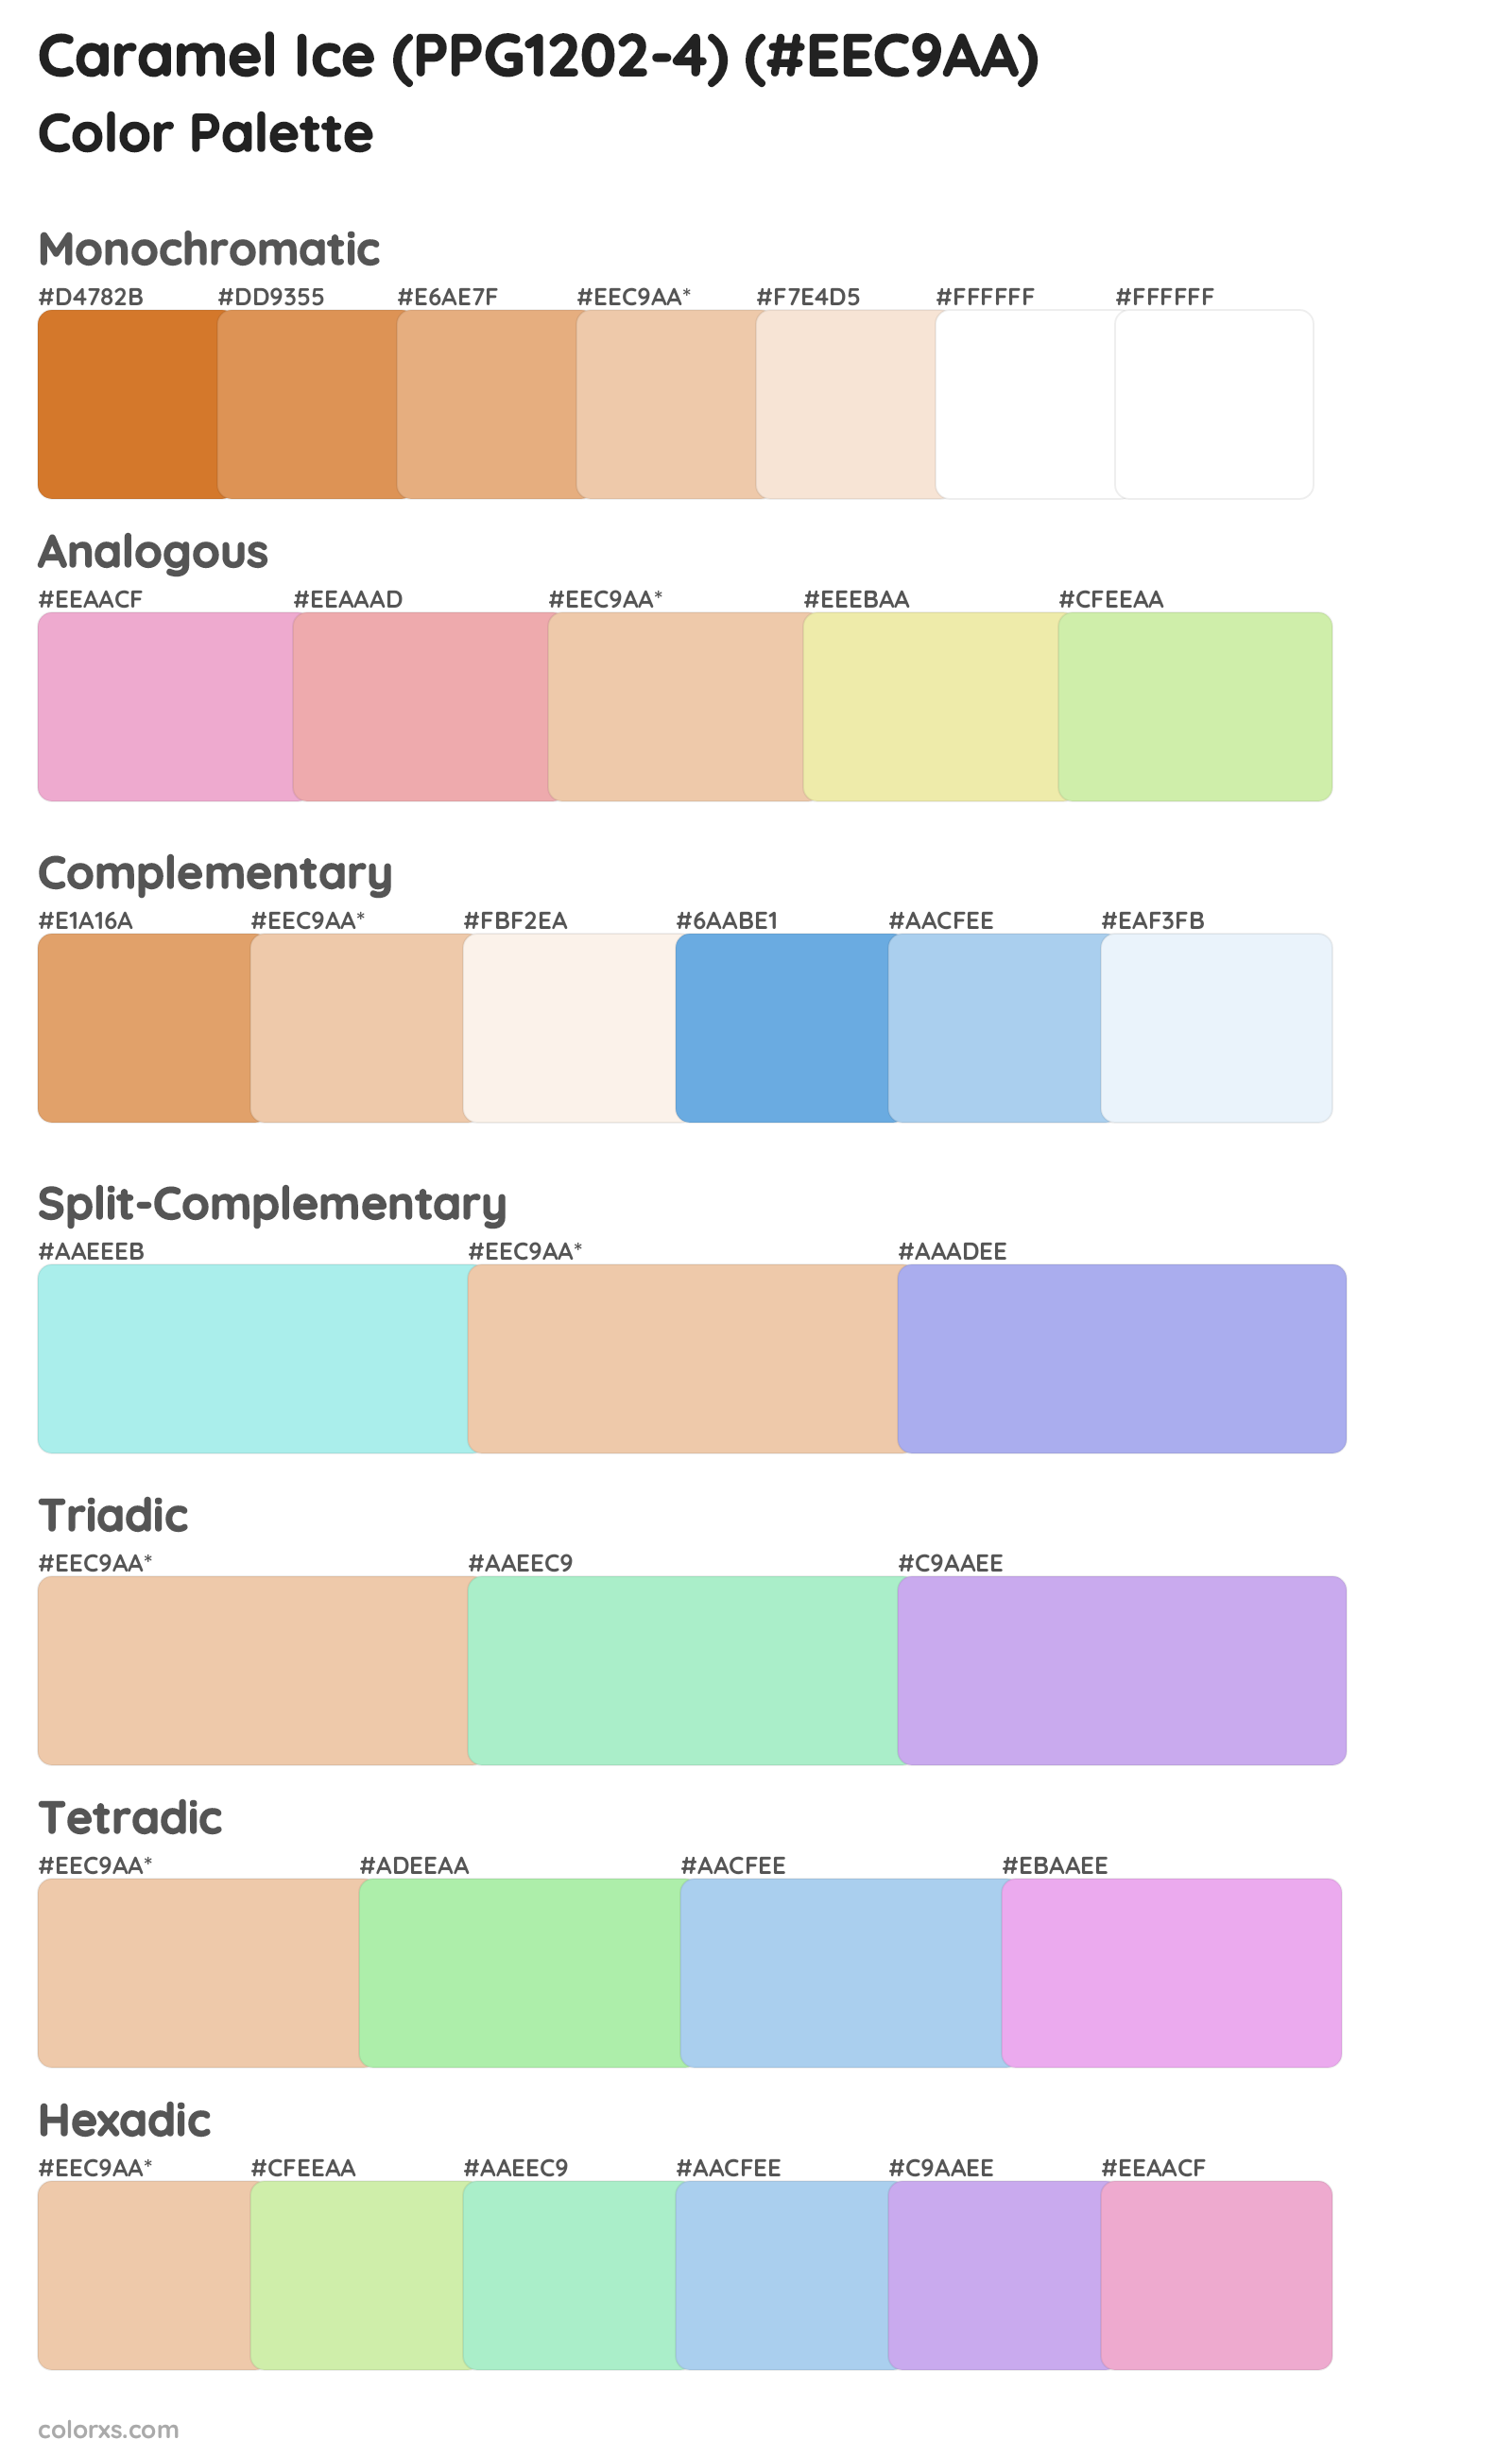 Caramel Ice (PPG1202-4) Color Scheme Palettes